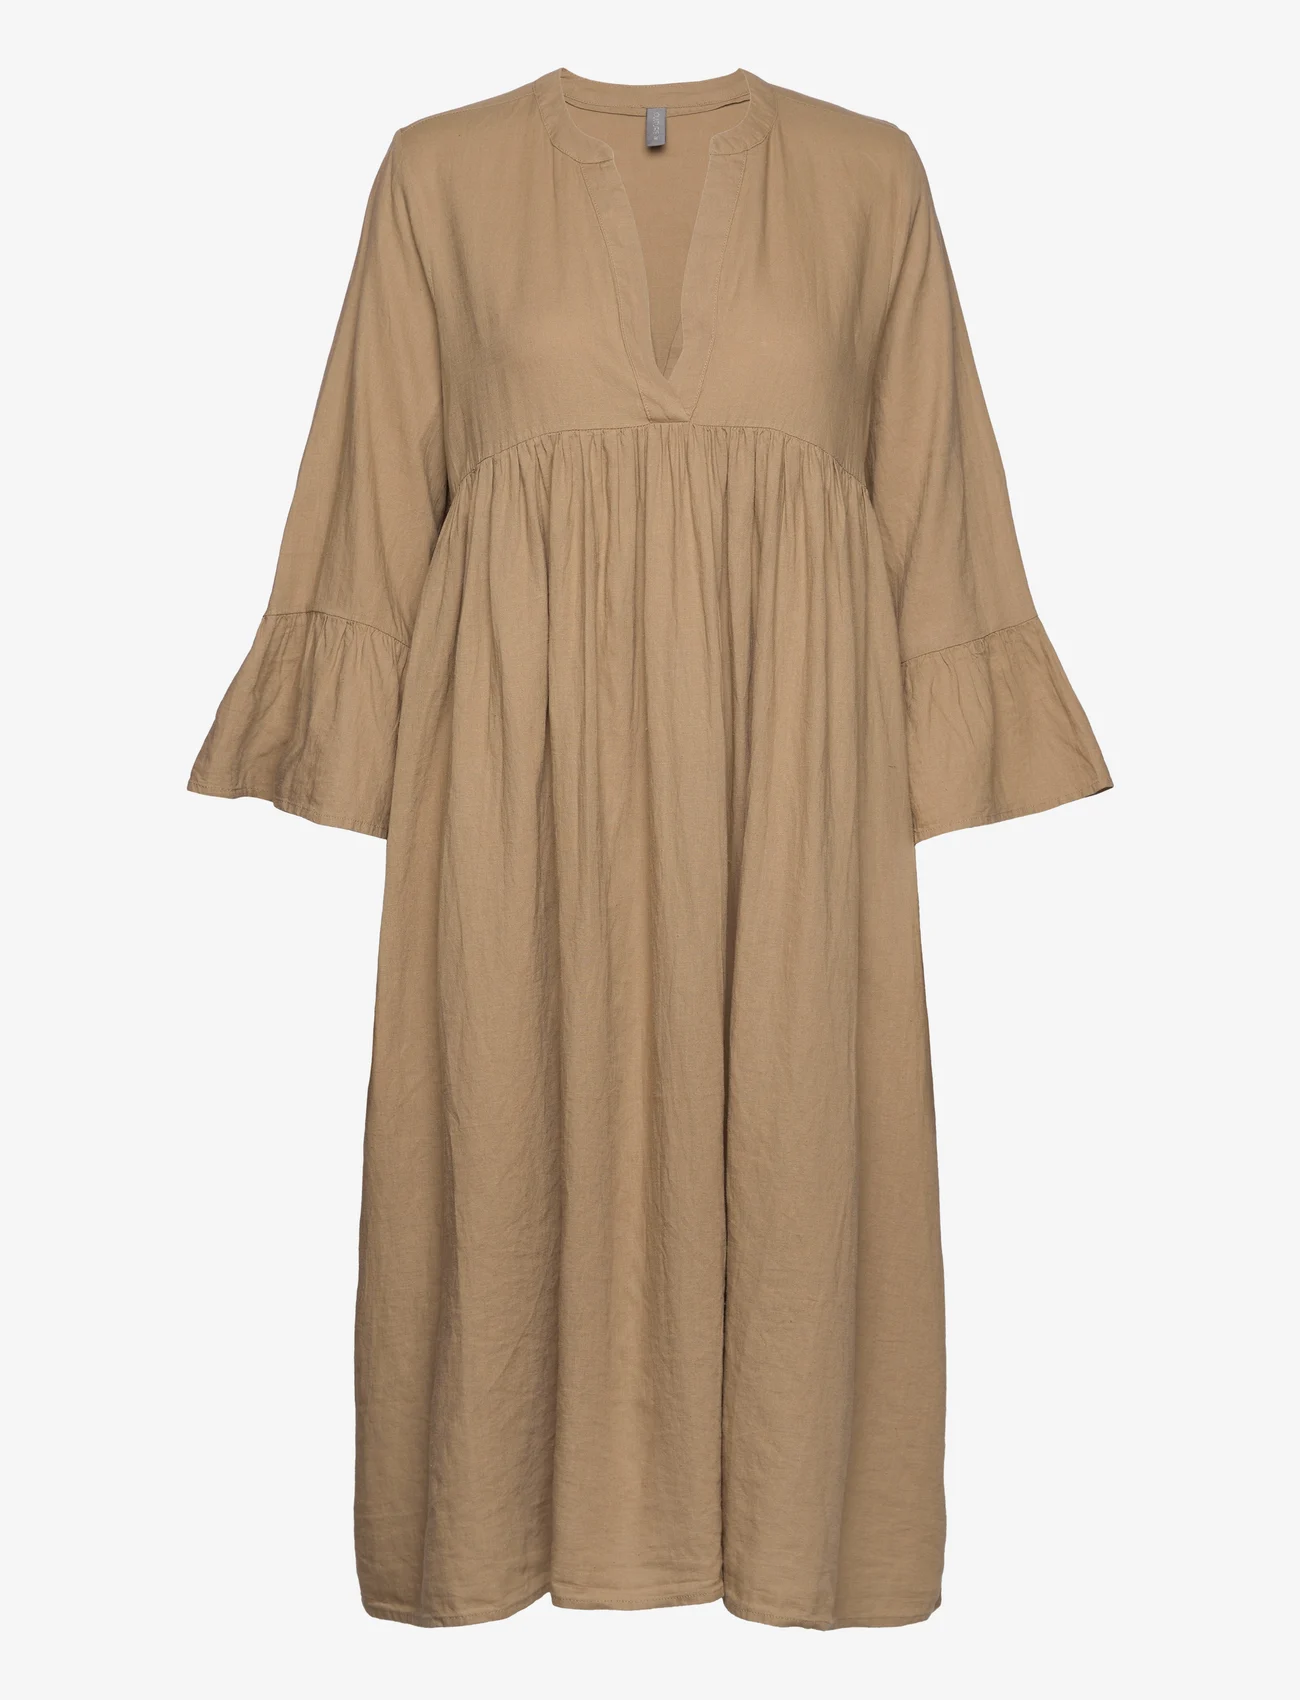 Culture - CUbrisa Long Dress - marškinių tipo suknelės - kelp - 0